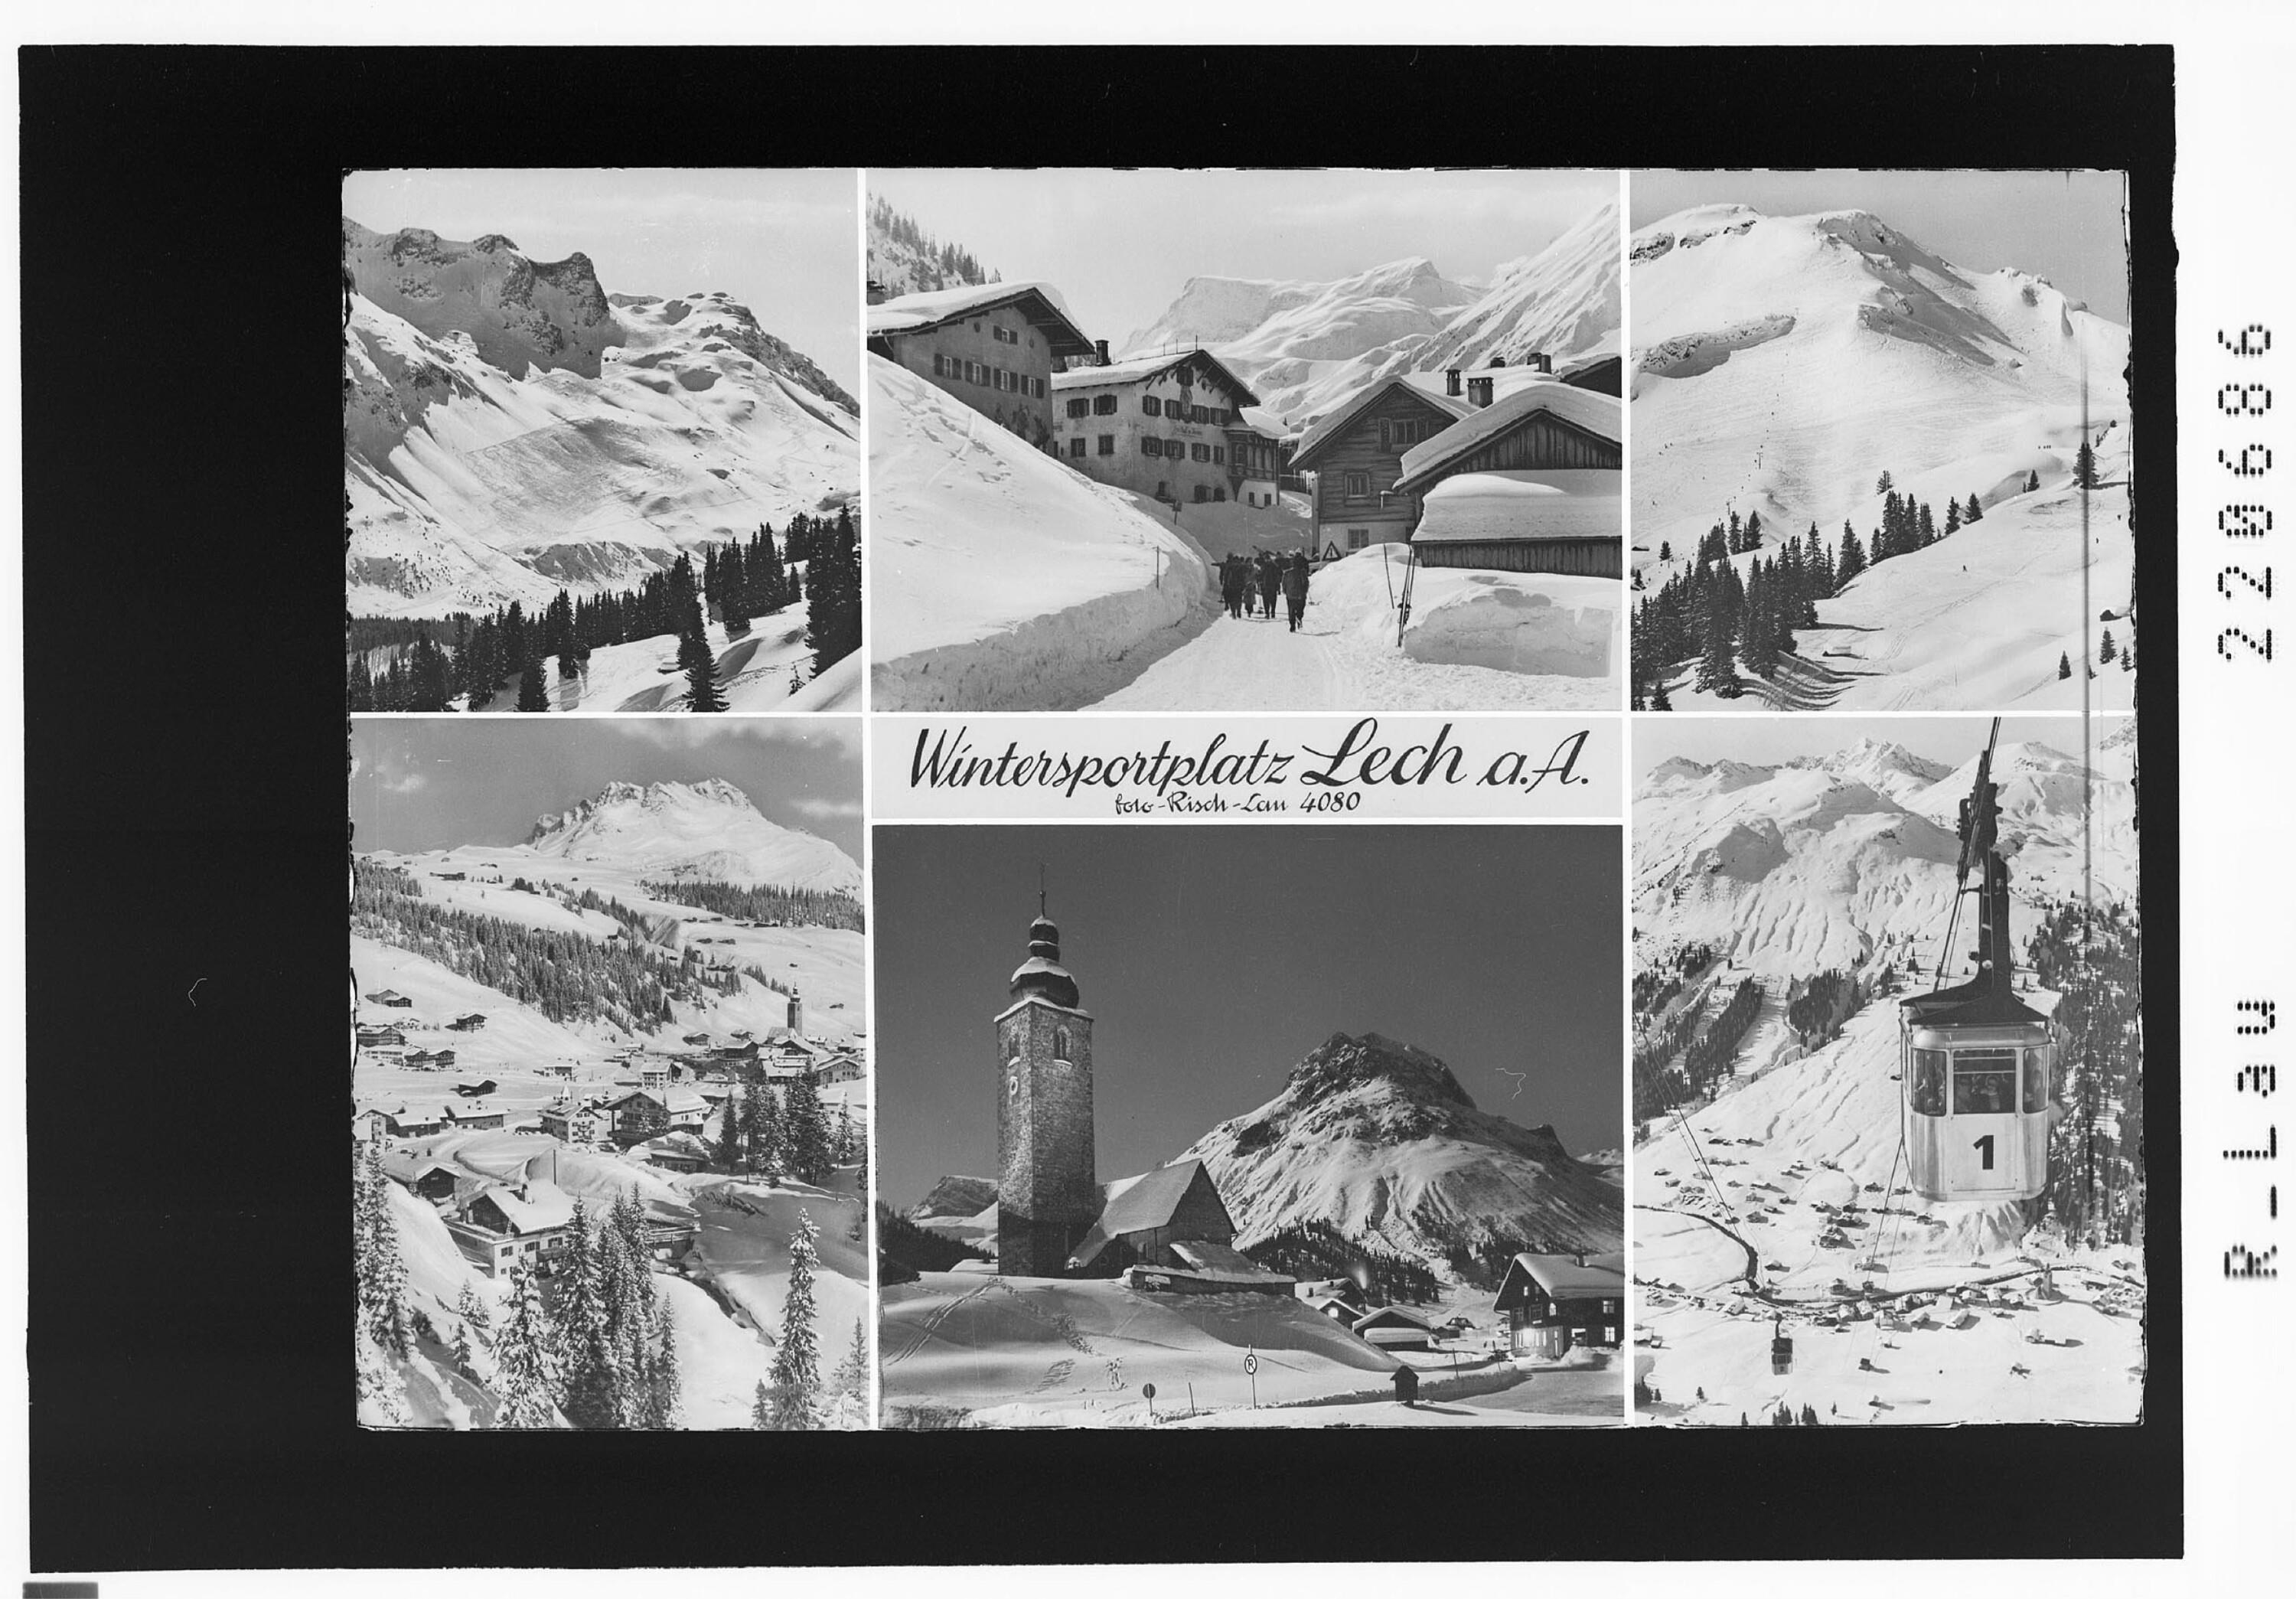 Wintersportplatz Lech am Arlberg></div>


    <hr>
    <div class=